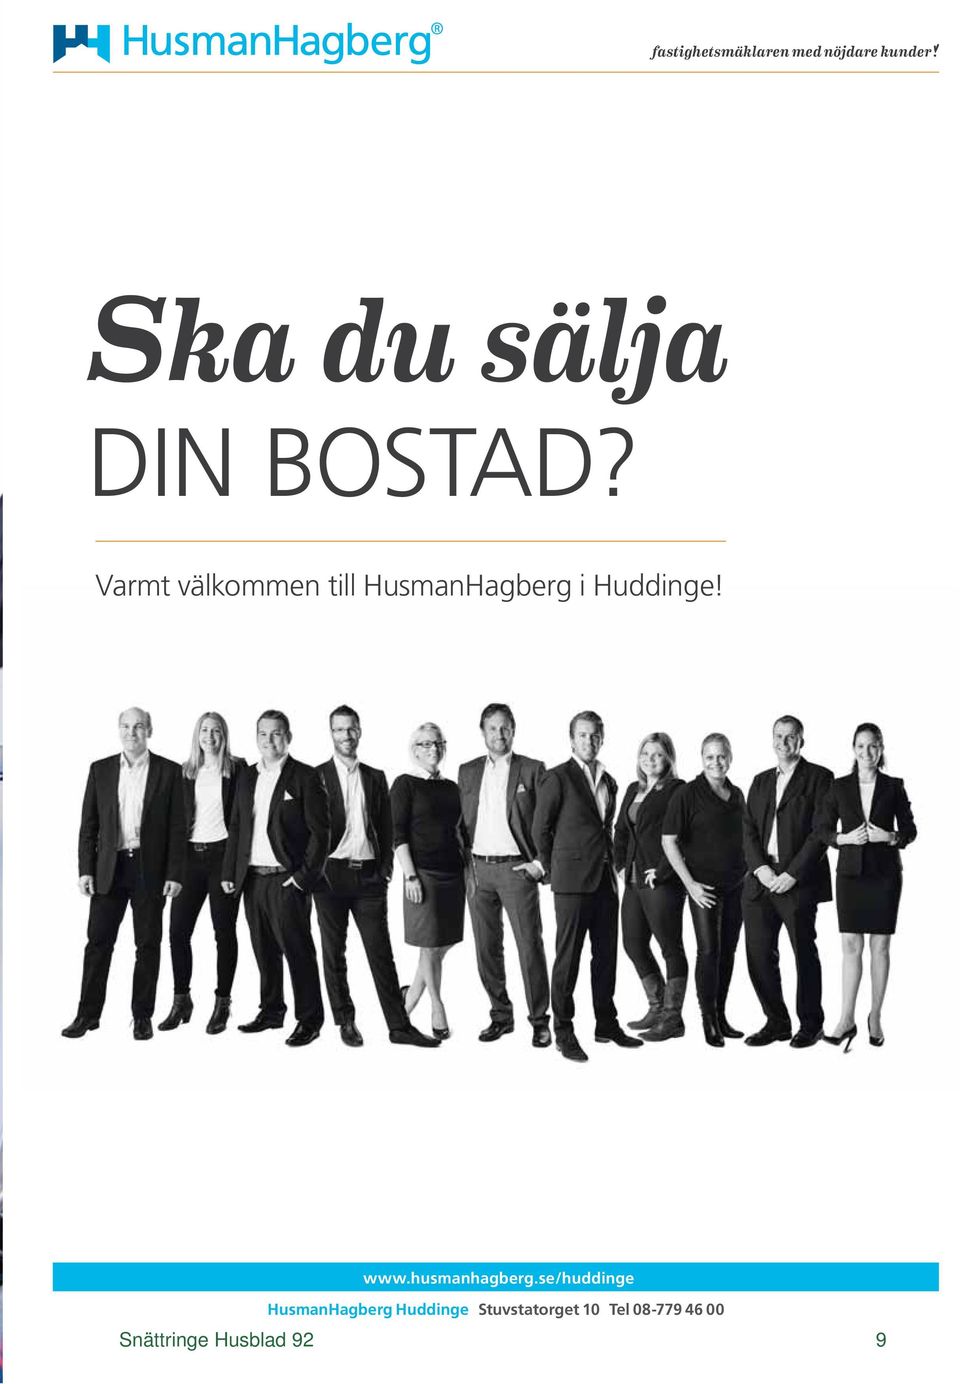 Varmt välkommen till HusmanHagberg i Huddinge! www.